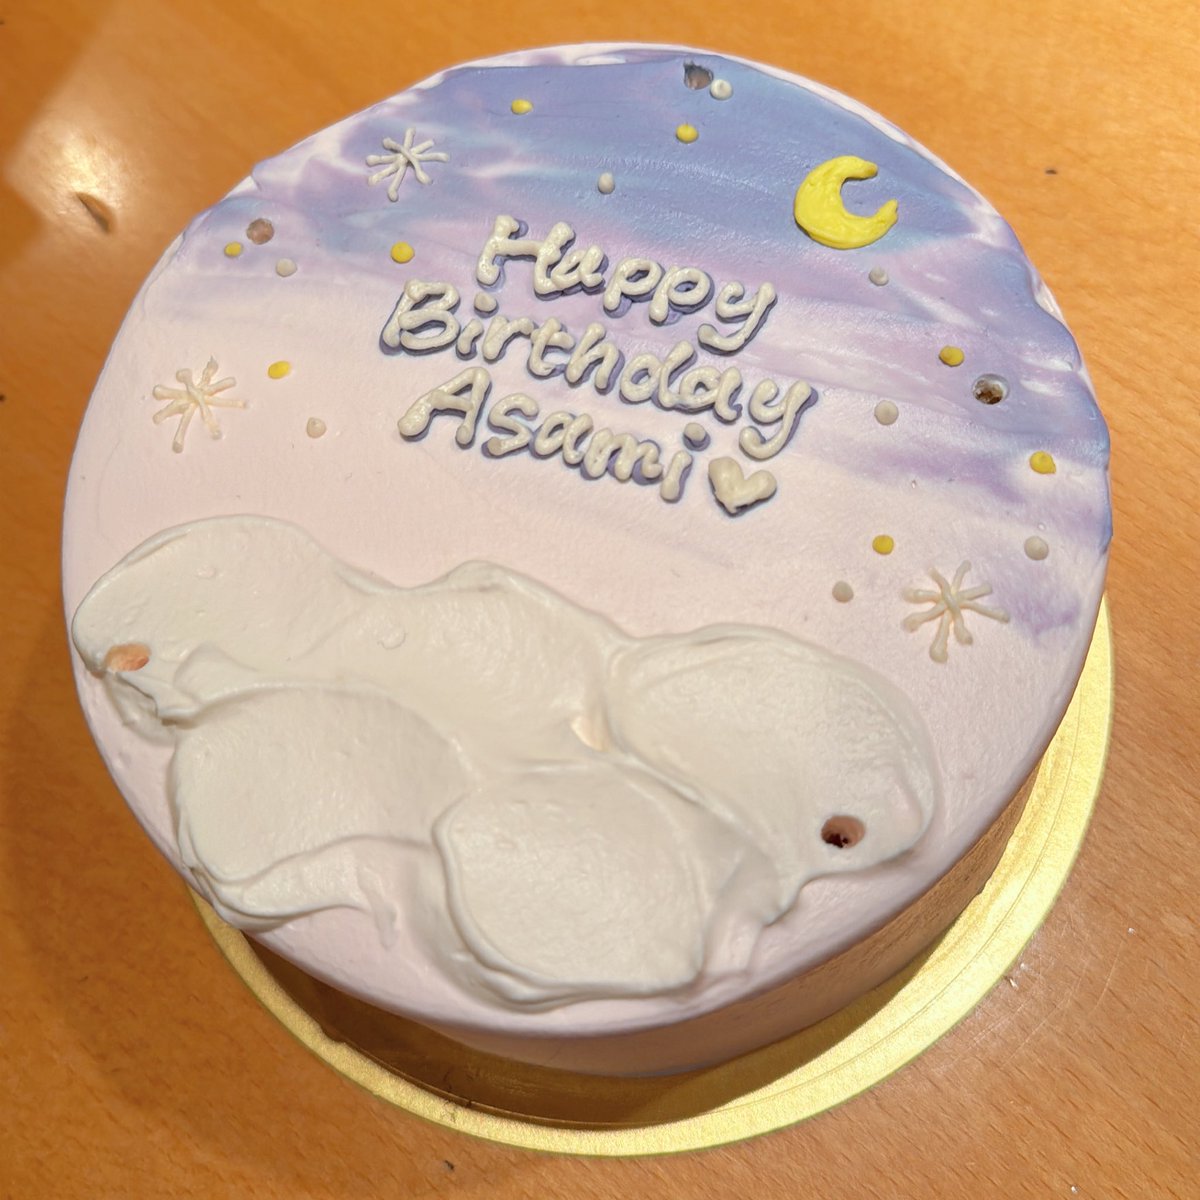 実は今日のRHでも、ツアーチーム総出でおめでとうしていただきました🥹 一昨日もりらちゃんとスタッフからケーキを貰ったり、こんなに誕生日続いていていいのか……。幸せ者です。ありがたい限りです🥲 📸 @shumpei_1002